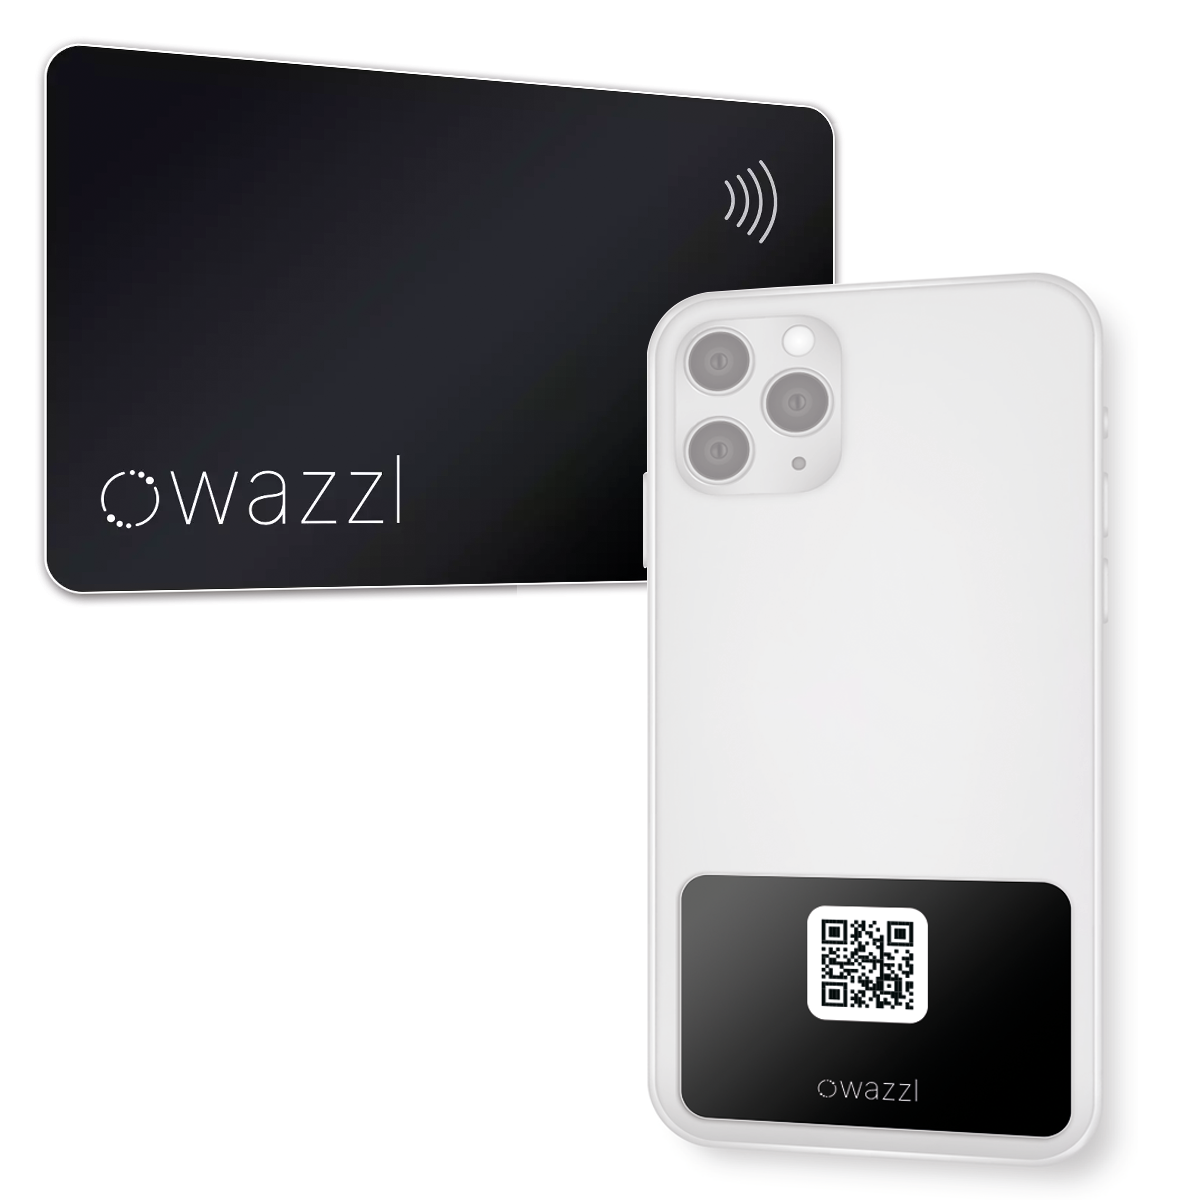 Set iniziale Smartcard (con codice QR) e wazzl NFC